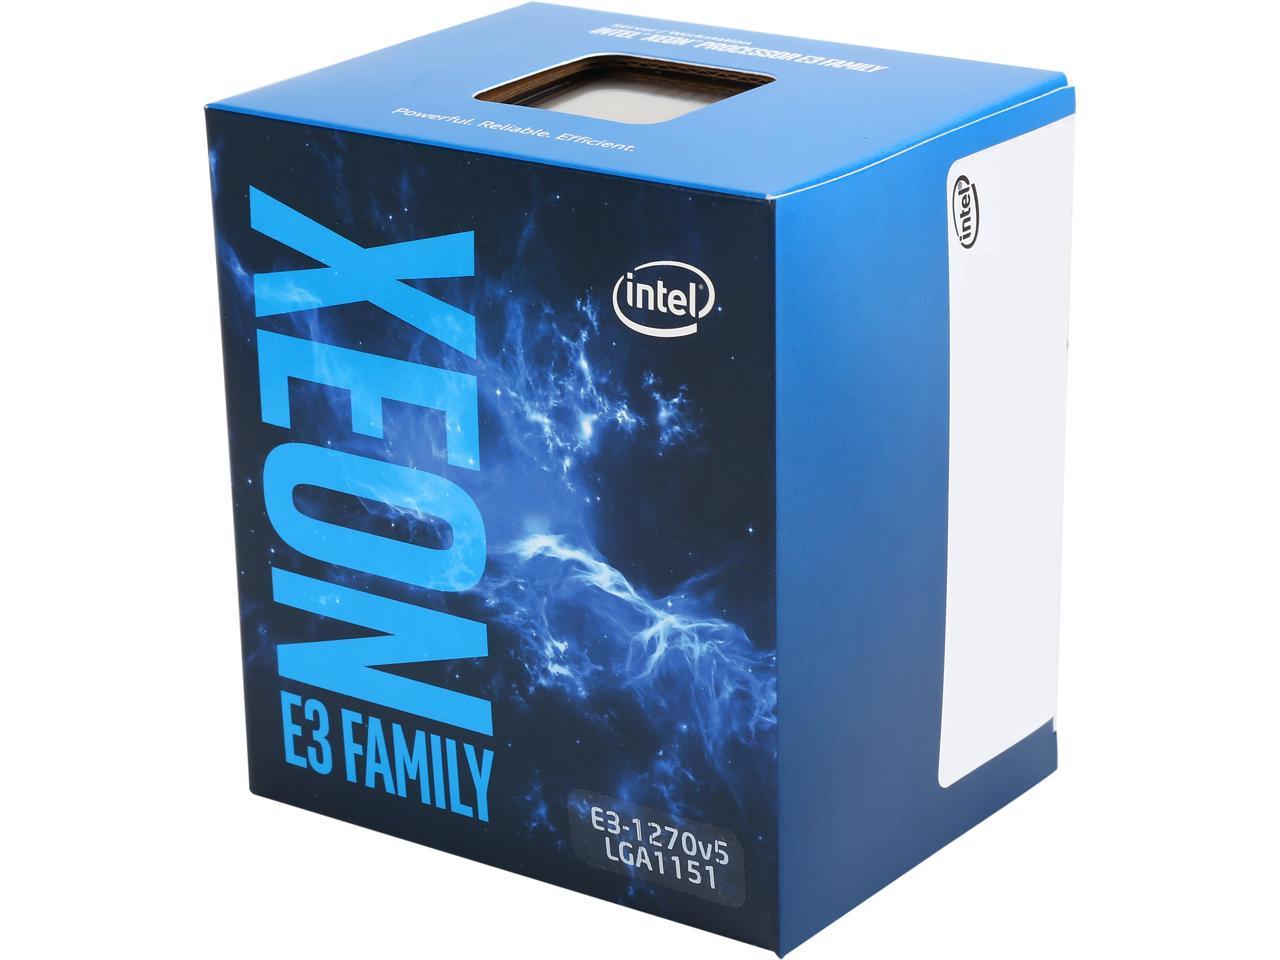 Intel Xeon E3-1270 v5 SkyLake 3.6 GHz 4 x 256KB L2 Cache 8MB L3 Cache LGA  1151 80W BX80662E31270V5 Server Processor